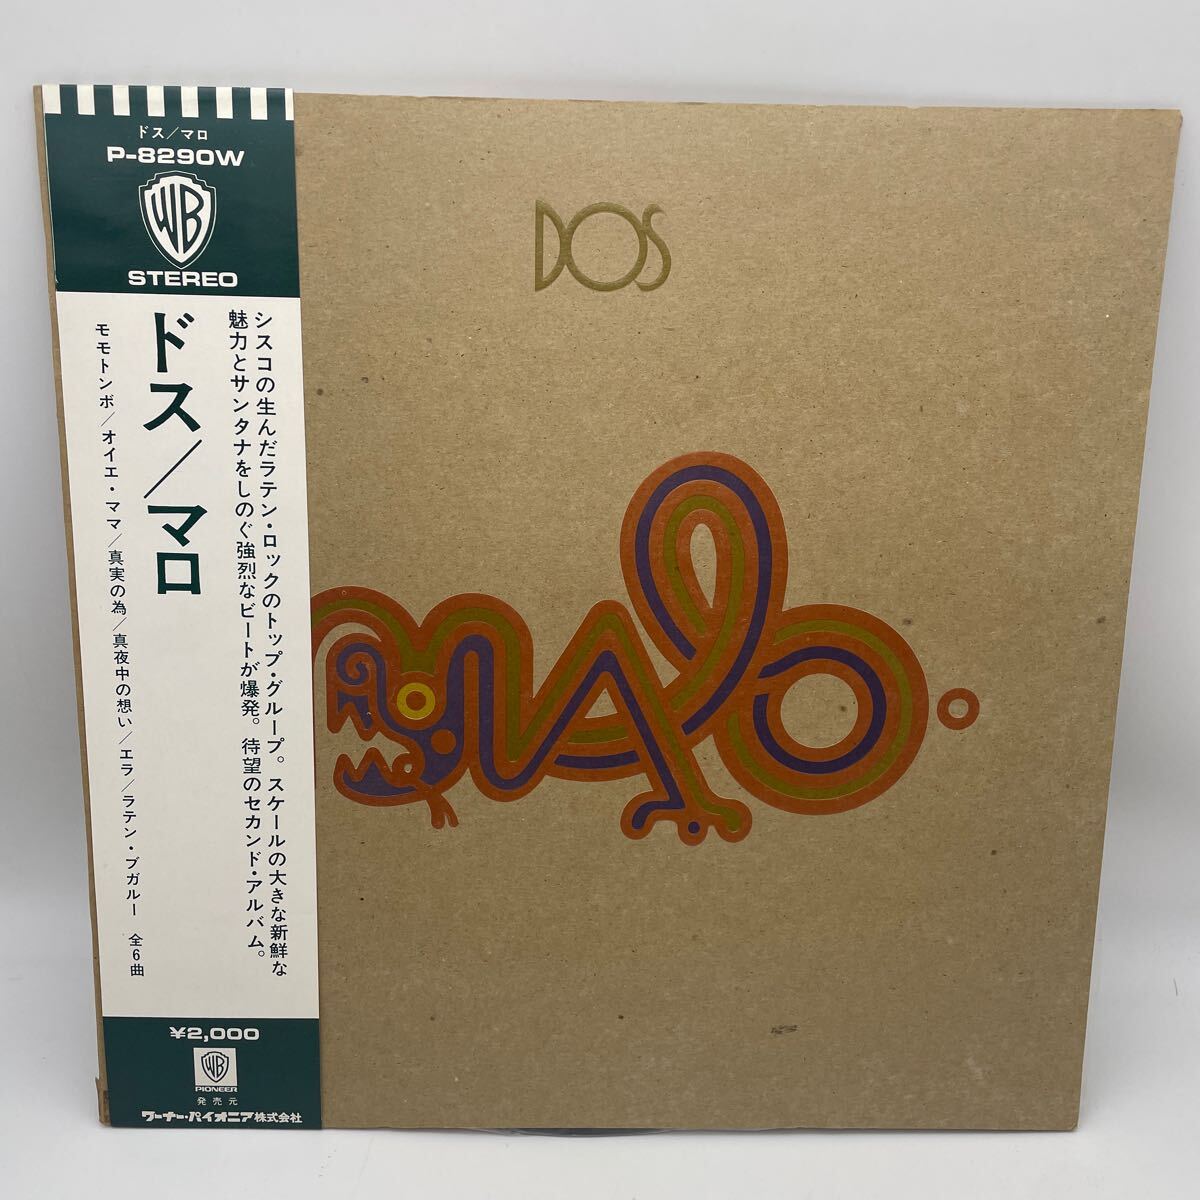 【帯付】マロ/ドス/Malo/Dos/レコード/LP/72年作/ラテンロック/_画像1